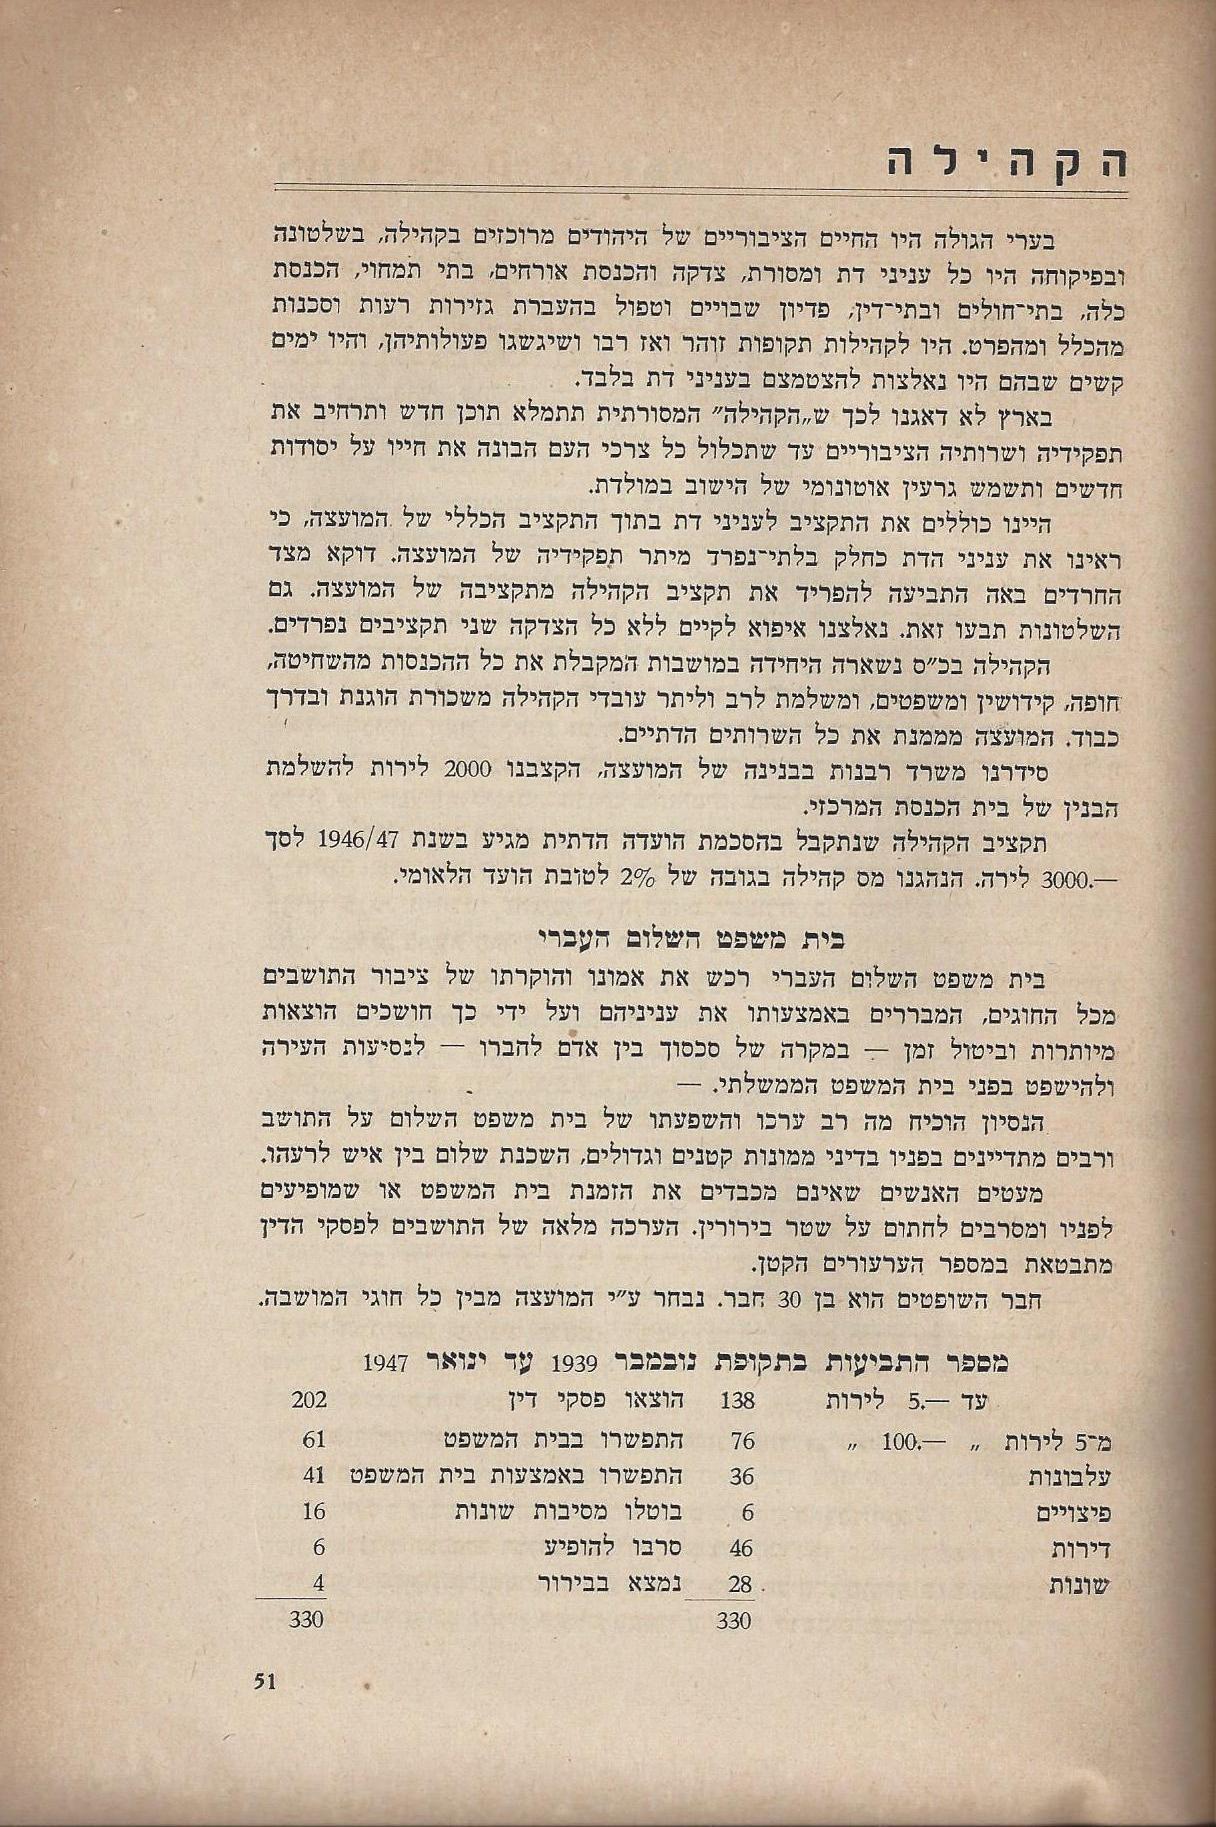   המועצה המקומית כפר סבא :דין וחשבון מהפעולות - בשנים 1946-1944 